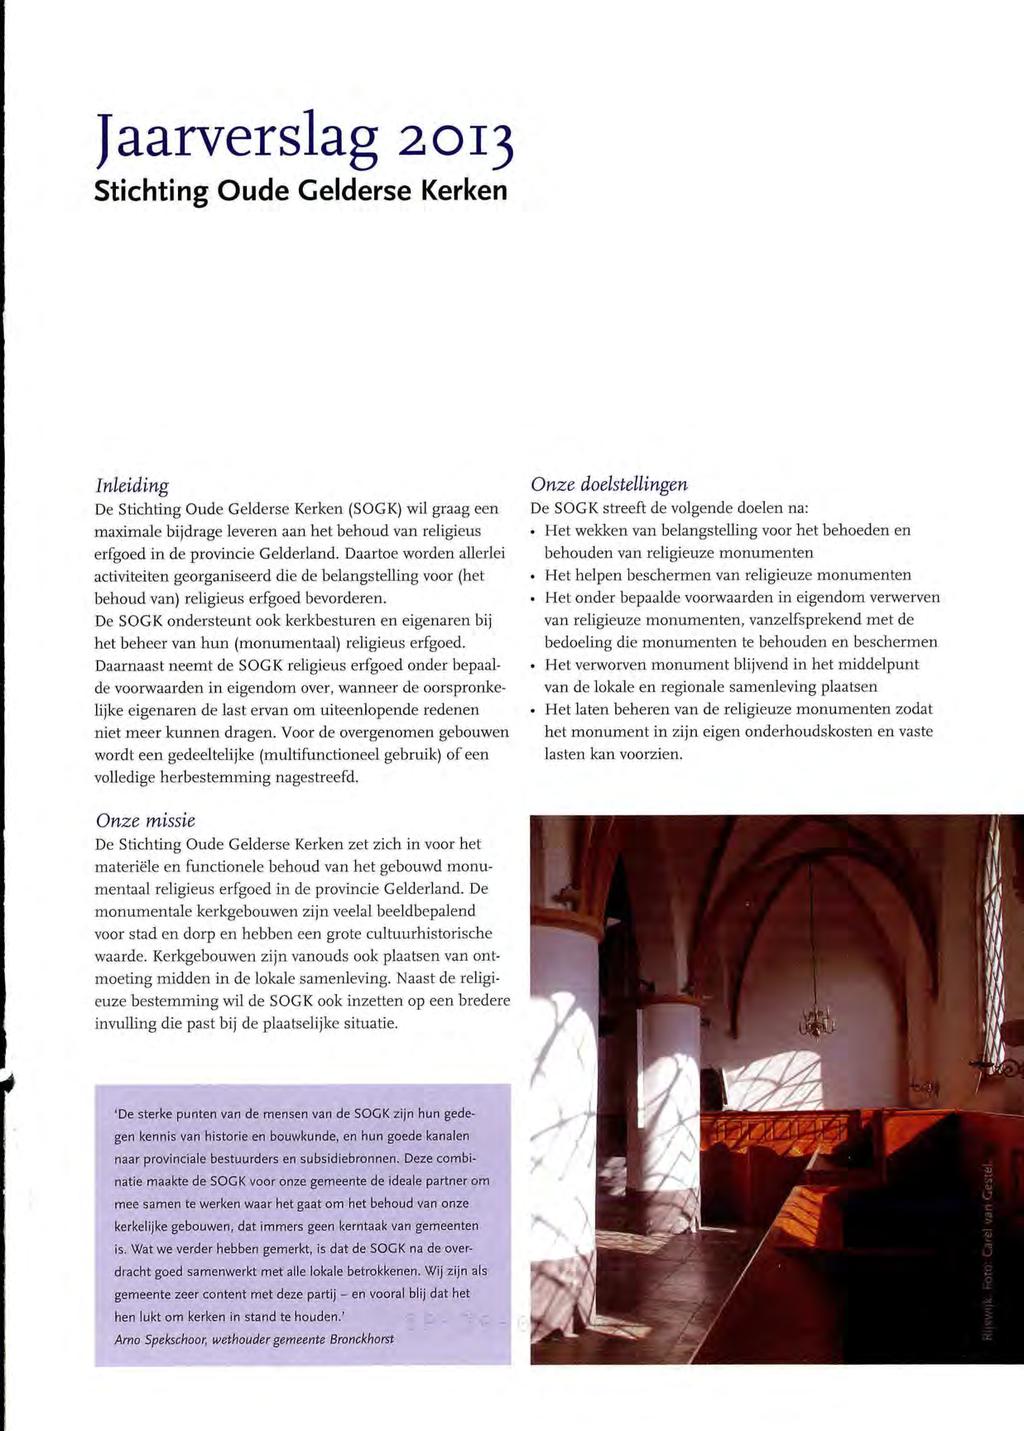 Jaarverslag 2013 Stichting Oude Gelderse Kerken Inleiding De Stichting Oude Gelderse Kerken (SOGK) wil graag een maximale bijdrage leveren aan het behoud van religieus erfgoed in de provincie